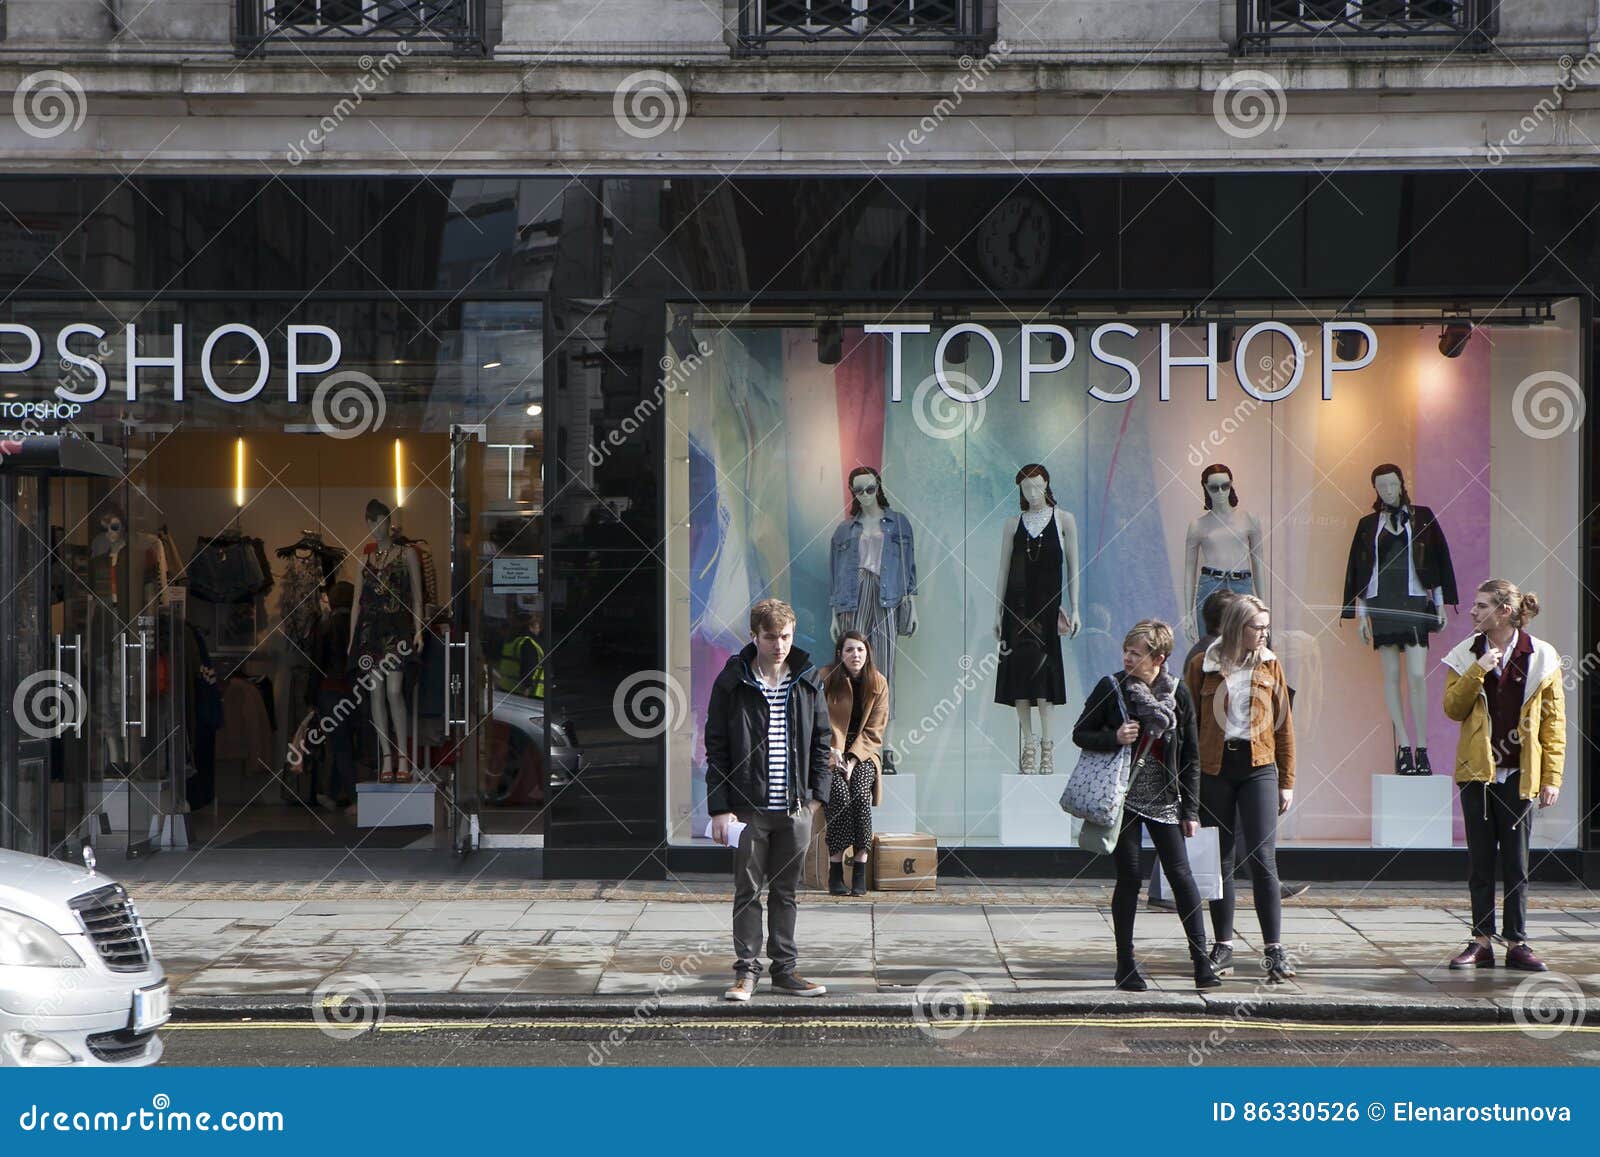 Lost my shop. Человек смотрит на витрину магазина. Девушка смотрит на витрину магазина. Девочка смотрит на витрину магазина. Blow shop.